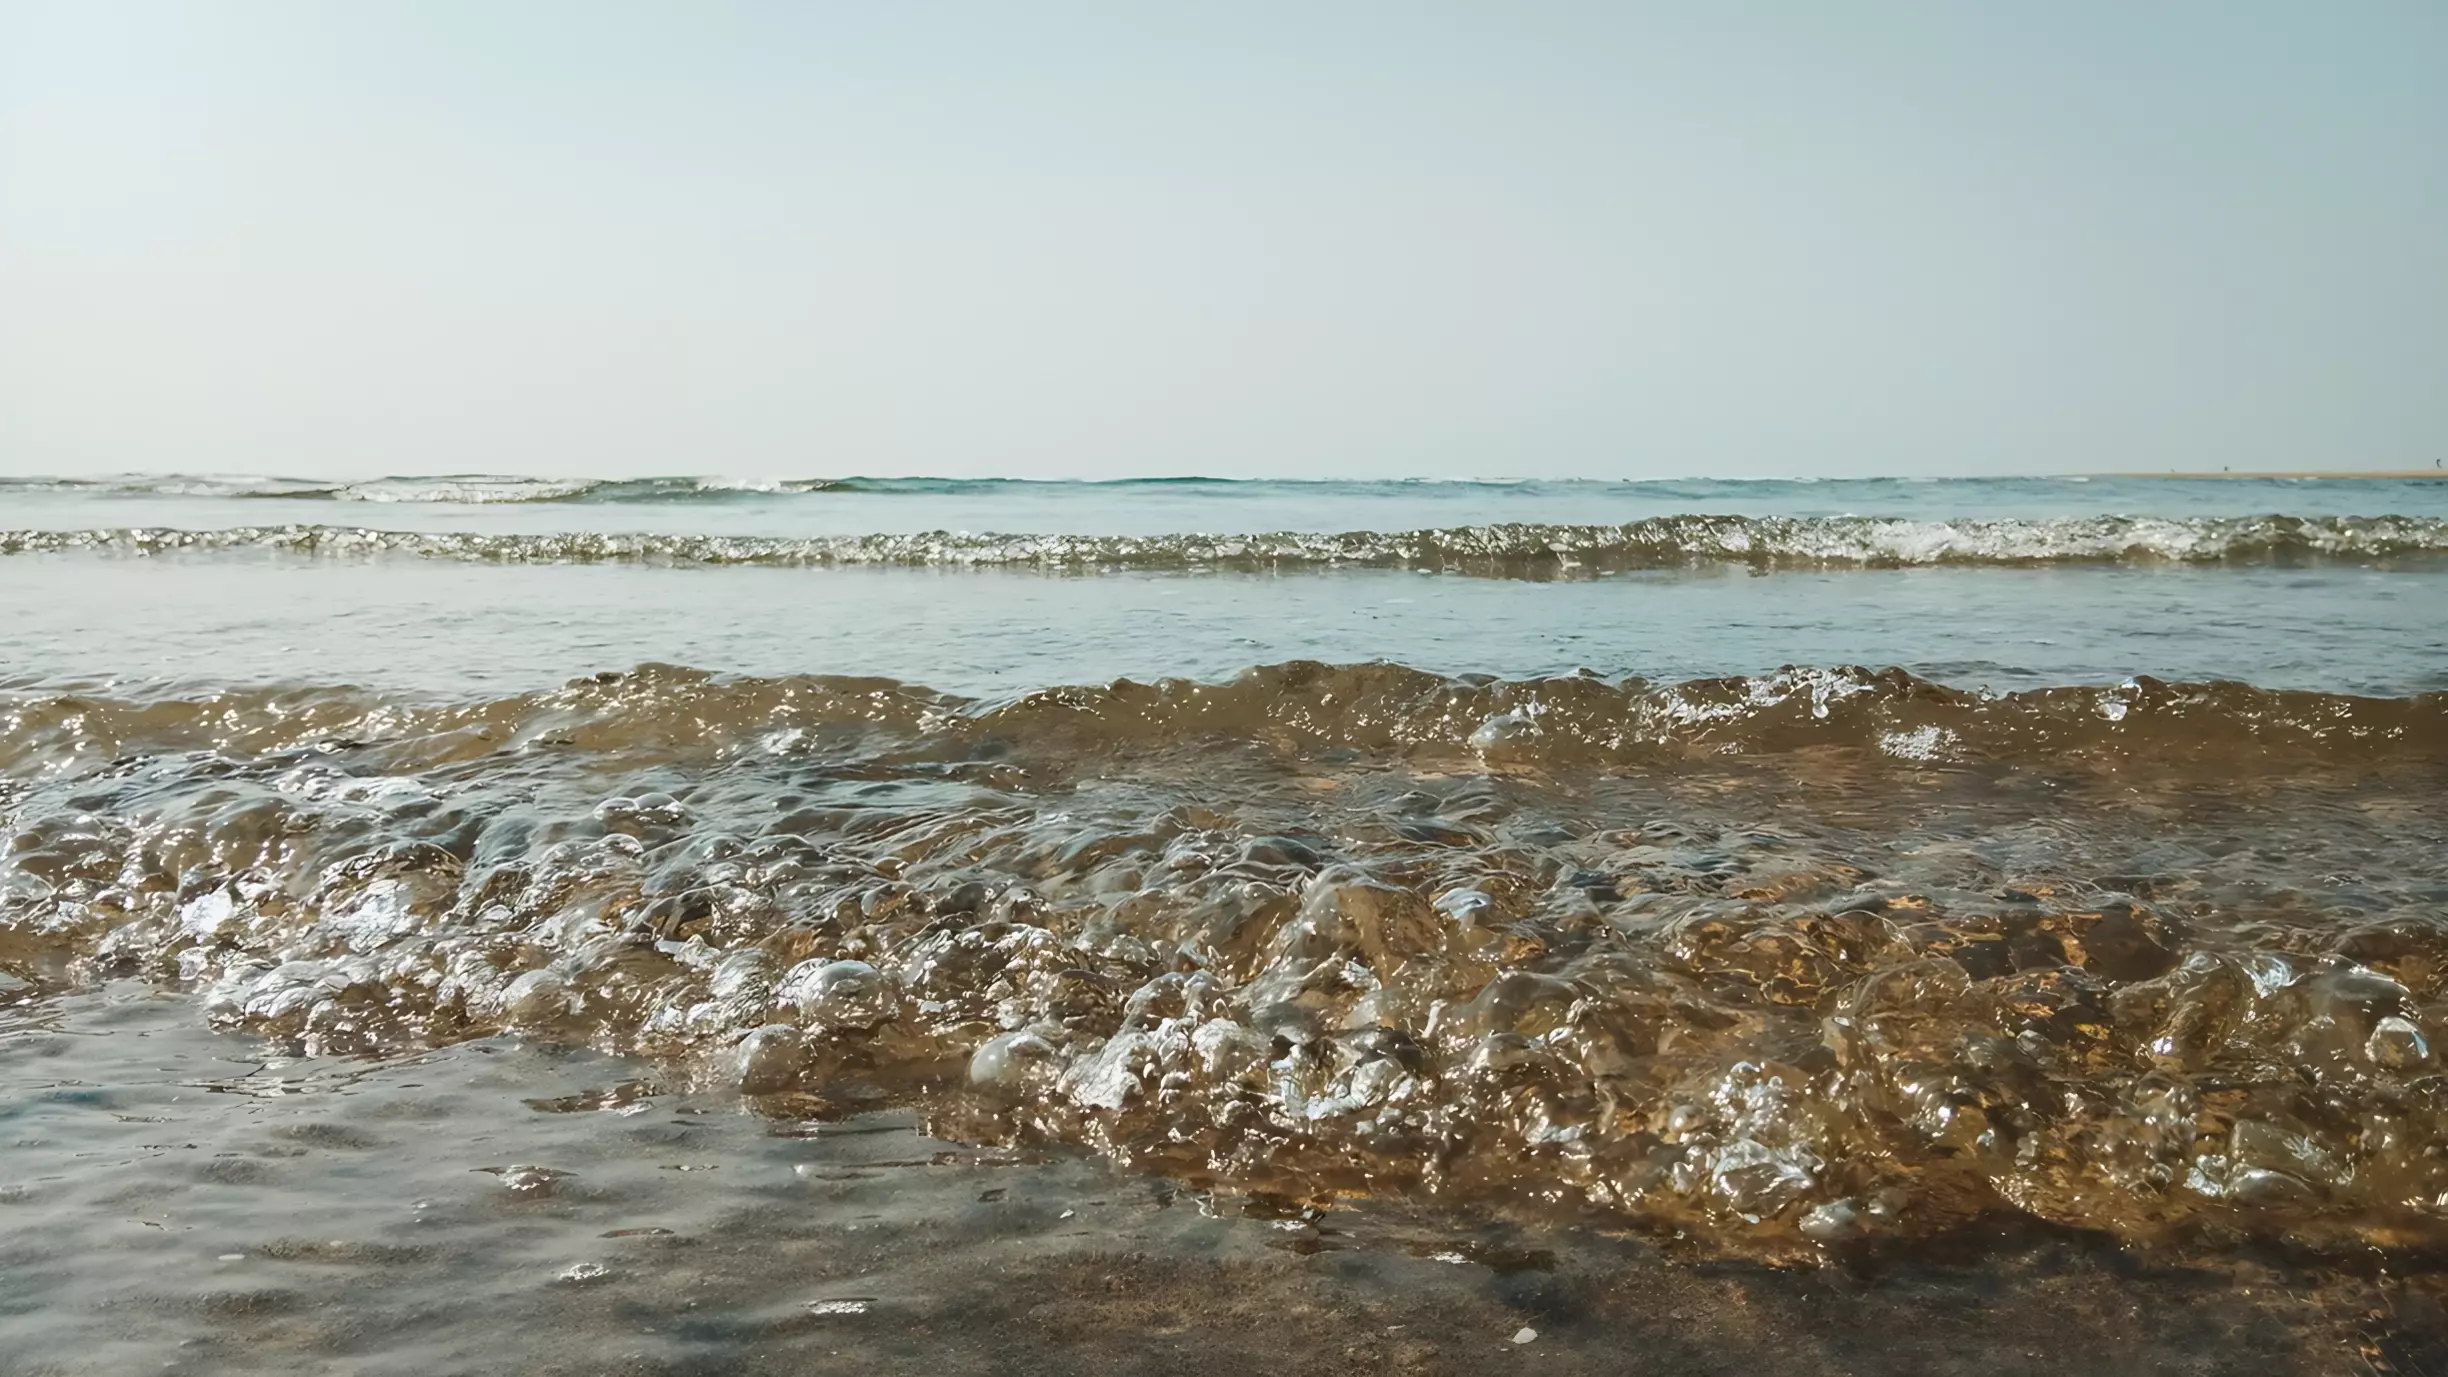 Приморцы вëдрами собирают моллюсков, выброшенных на берег — это безопасно?